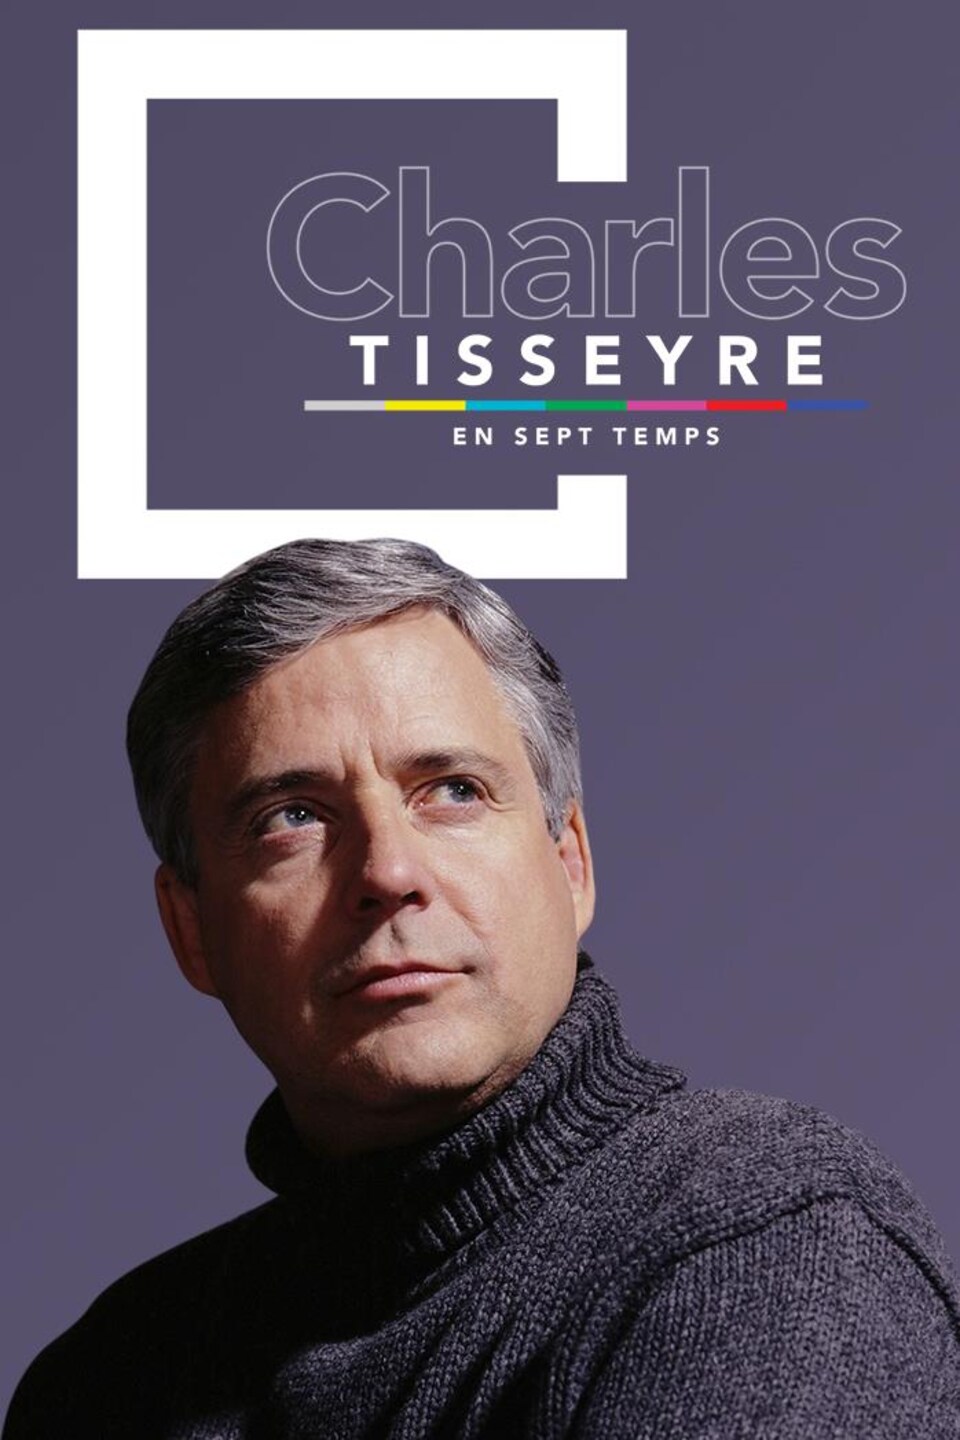 Page couverture du magazine web Charles Tisseyre en 7 temps. Vêtu d,un col roulé gris, Charles regarde vers le haut à sa gauche. 